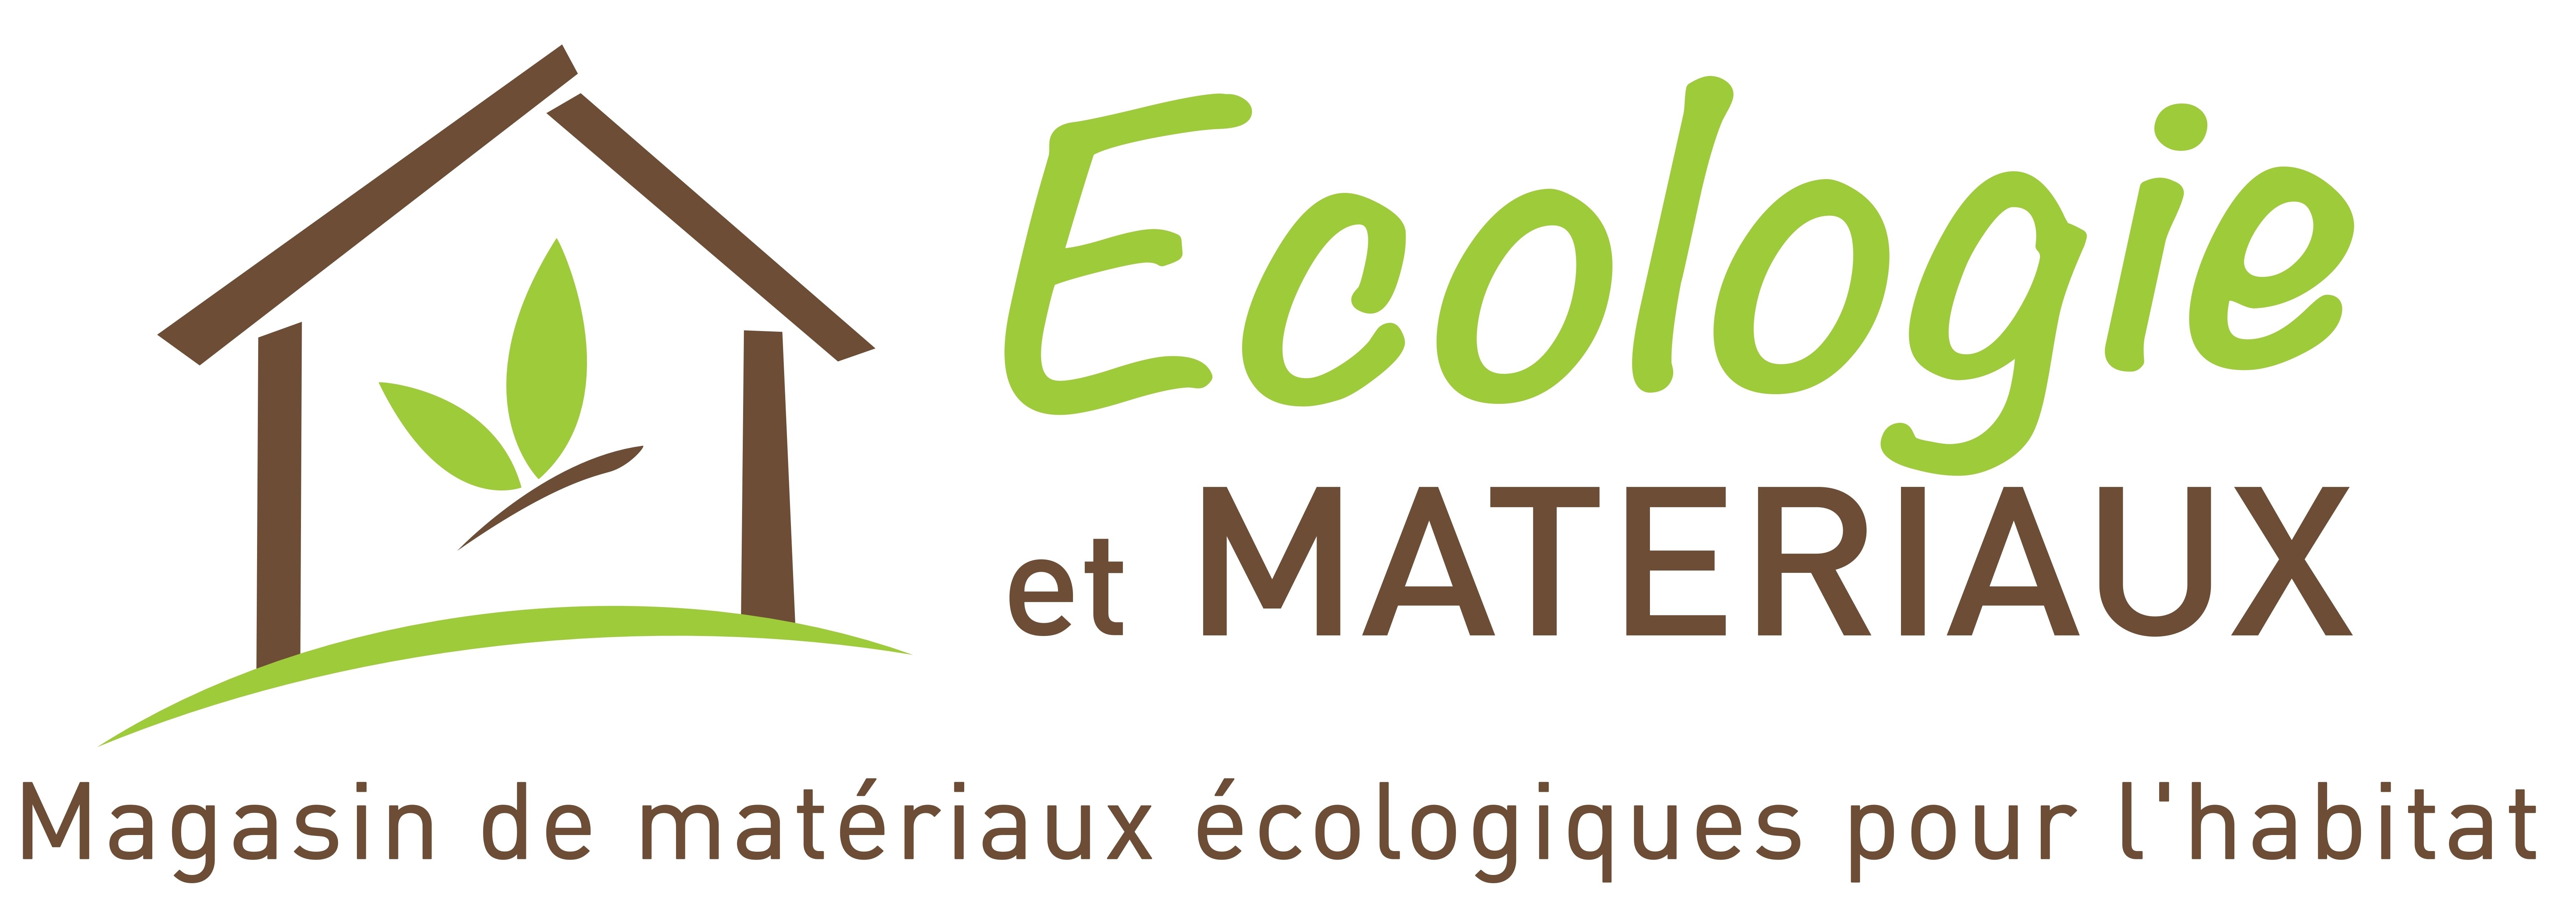 Écologie et Matériaux